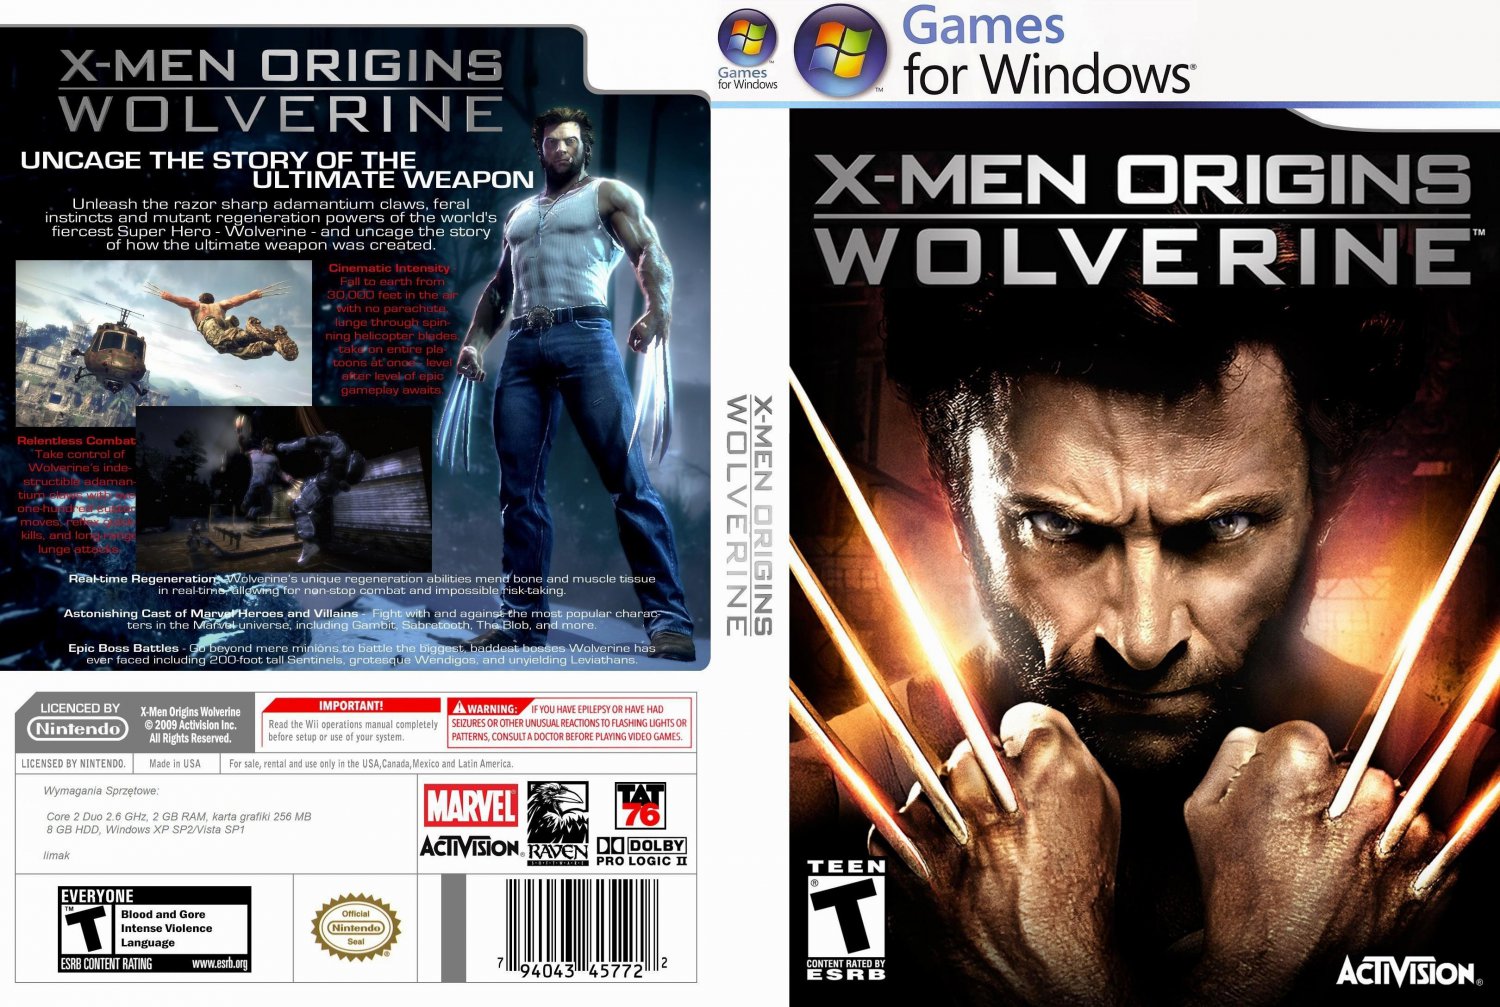 X-Men Origins Game PC - một thế giới đầy những người có khả năng siêu nhiên và cảm xúc mãnh liệt. Bạn sẽ được khám phá những bí mật của các nhân vật khác nhau và thử sức mình trong những trận chiến đầy kịch tính.